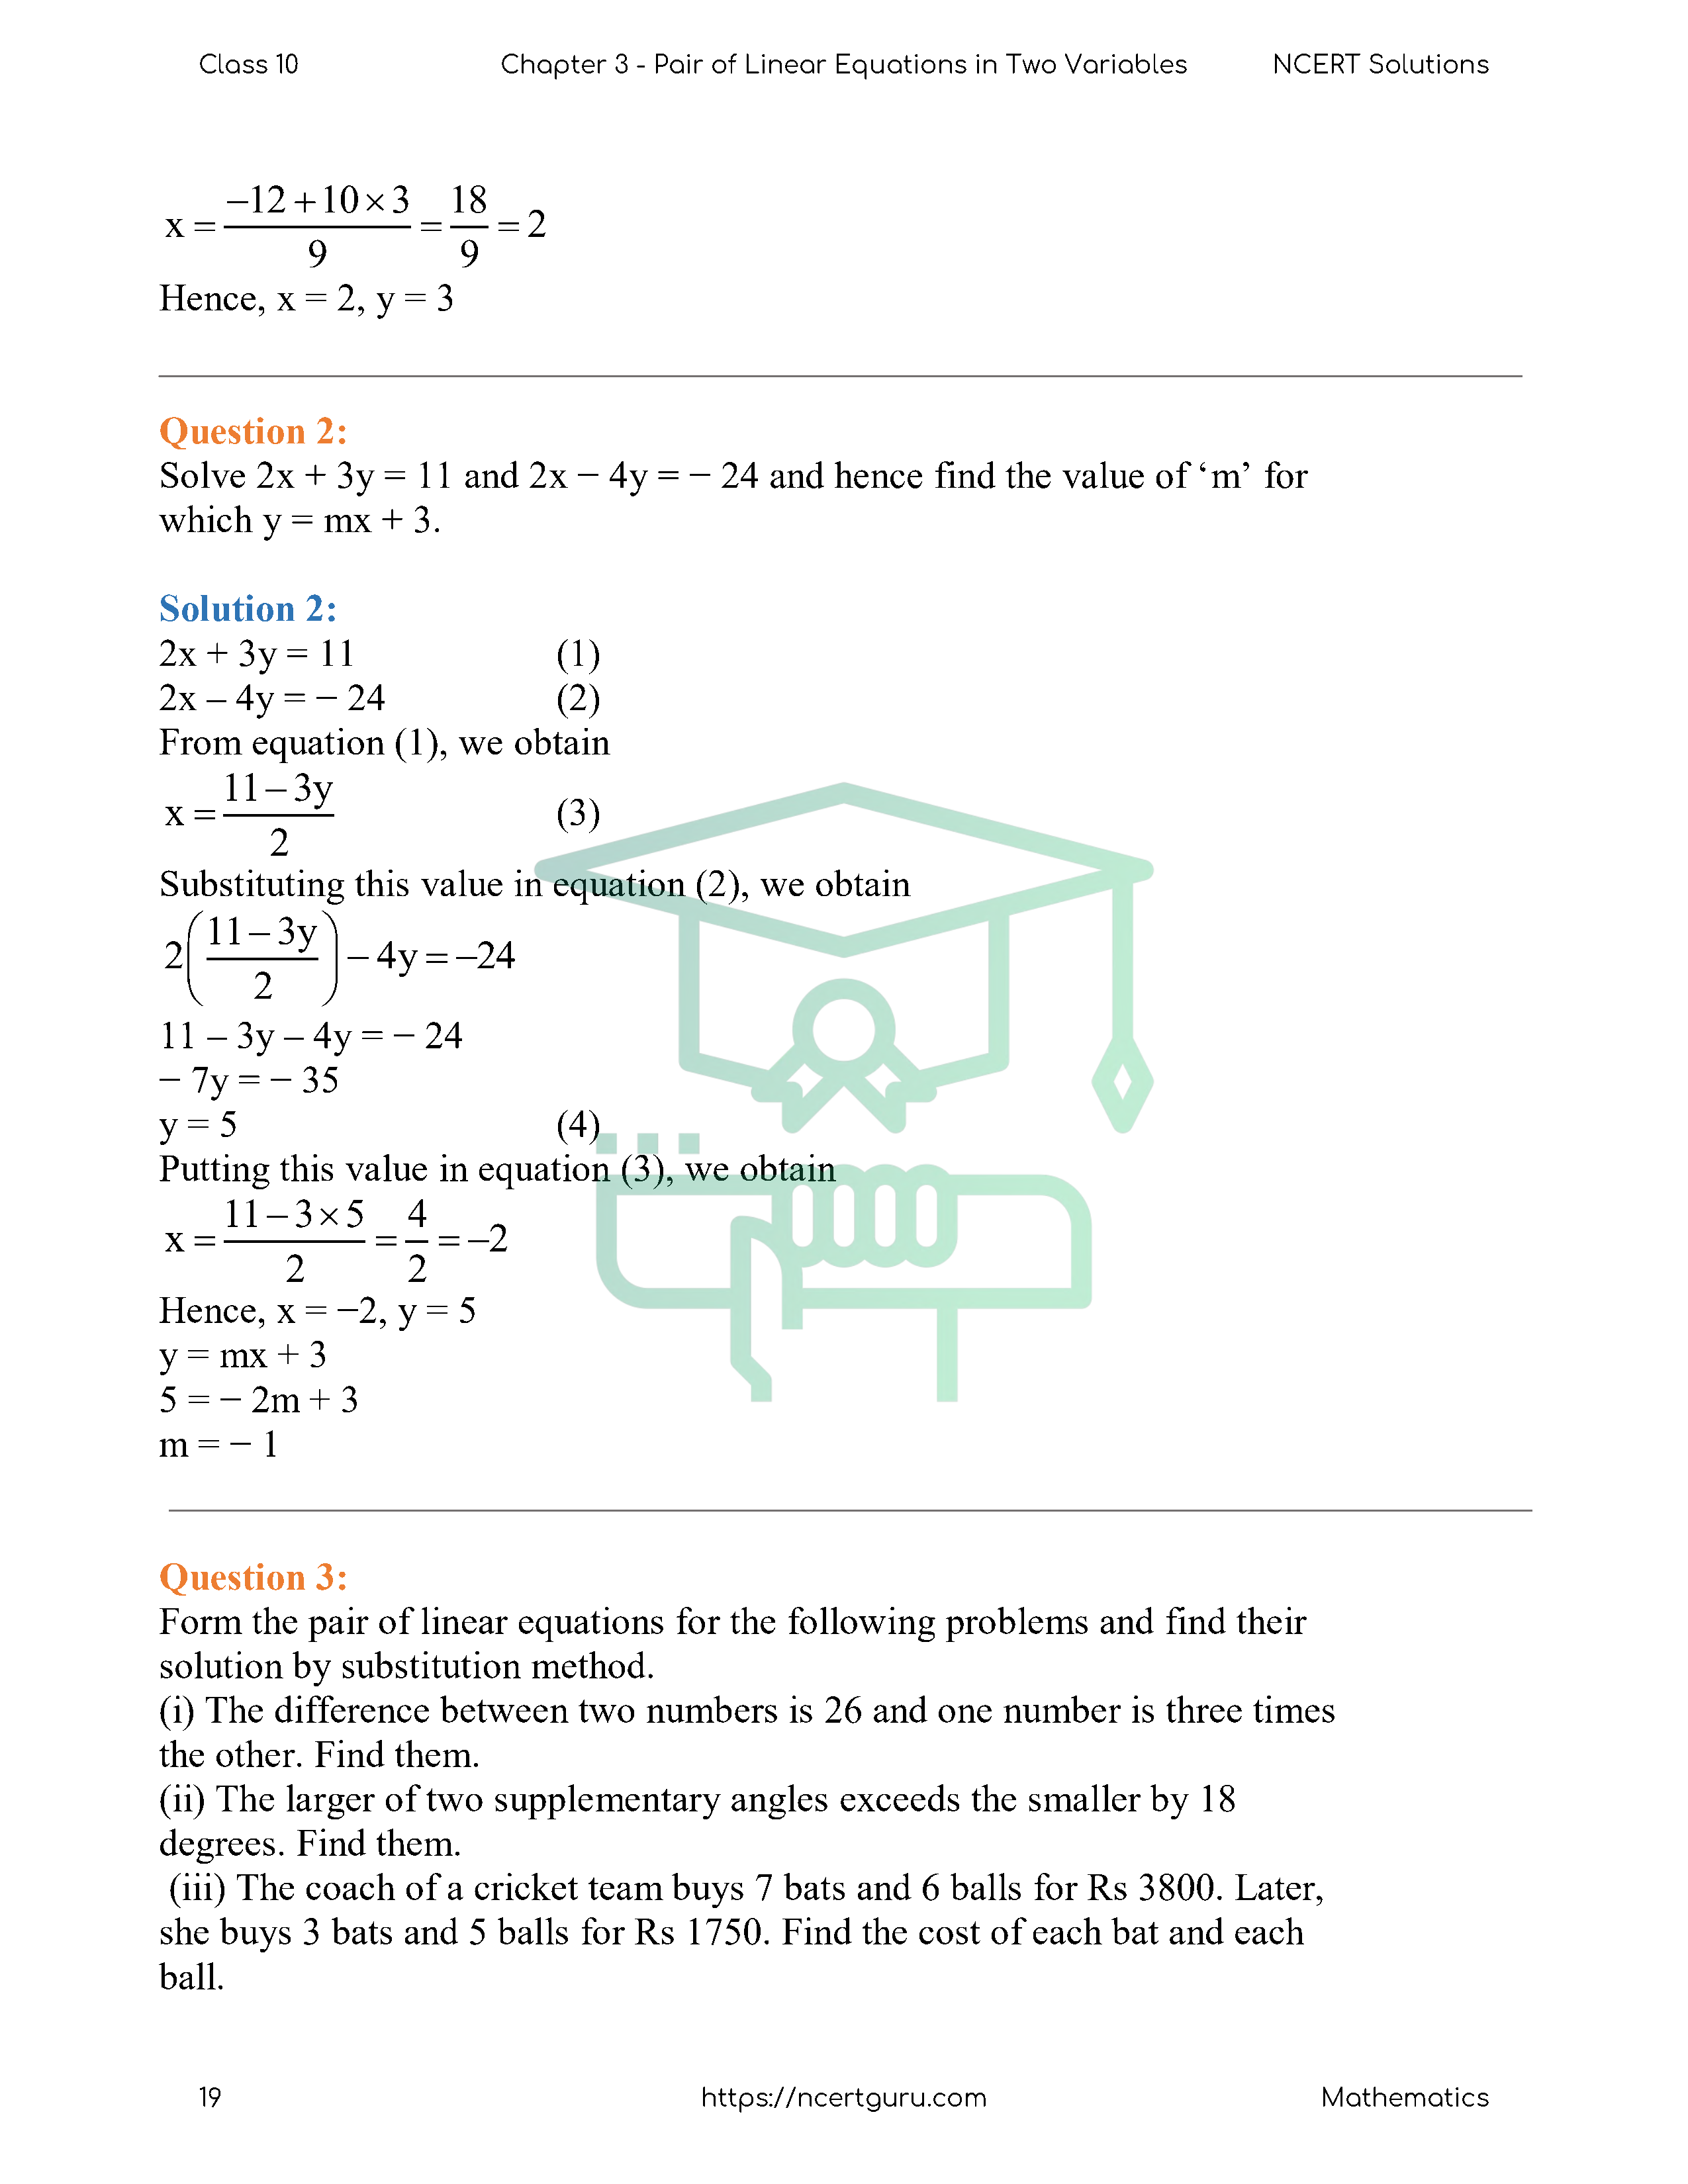 NCERT Solutions for Class 10 Maths Chapter 3